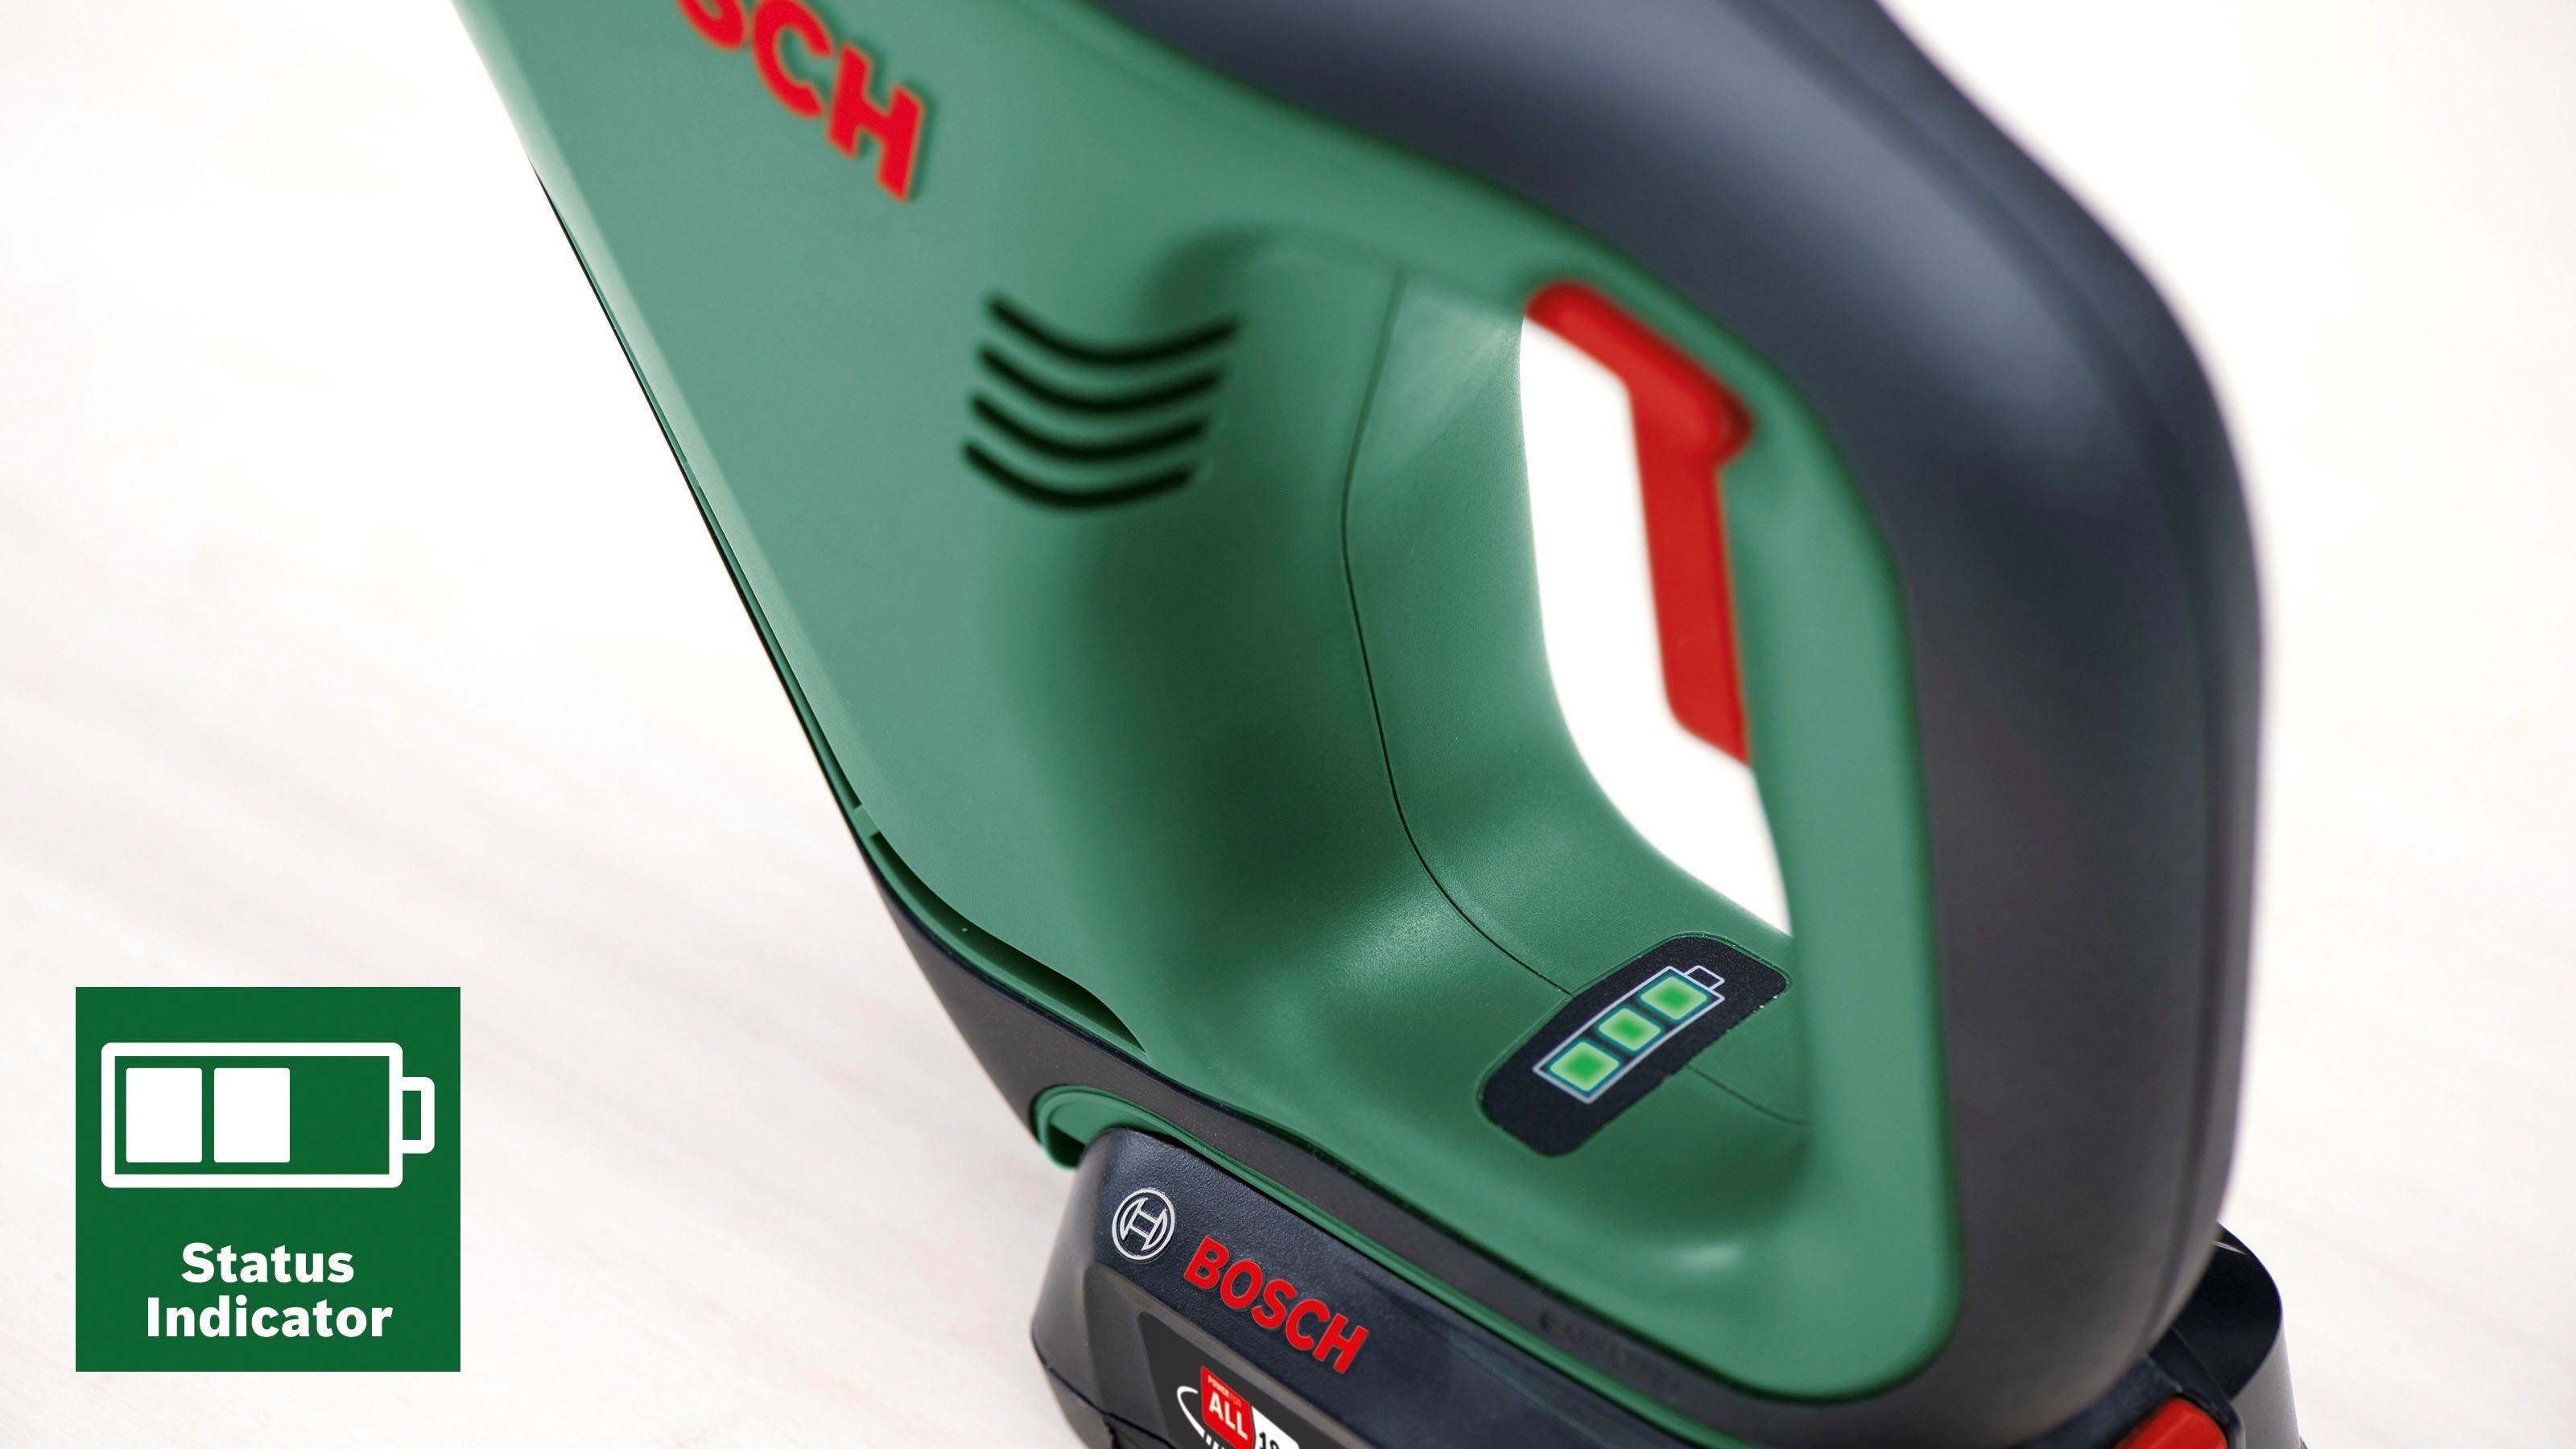 Bosch Home & Garden Akku-Säbelsäge ohne Akku und 18, AdvancedRecip Ladegerät